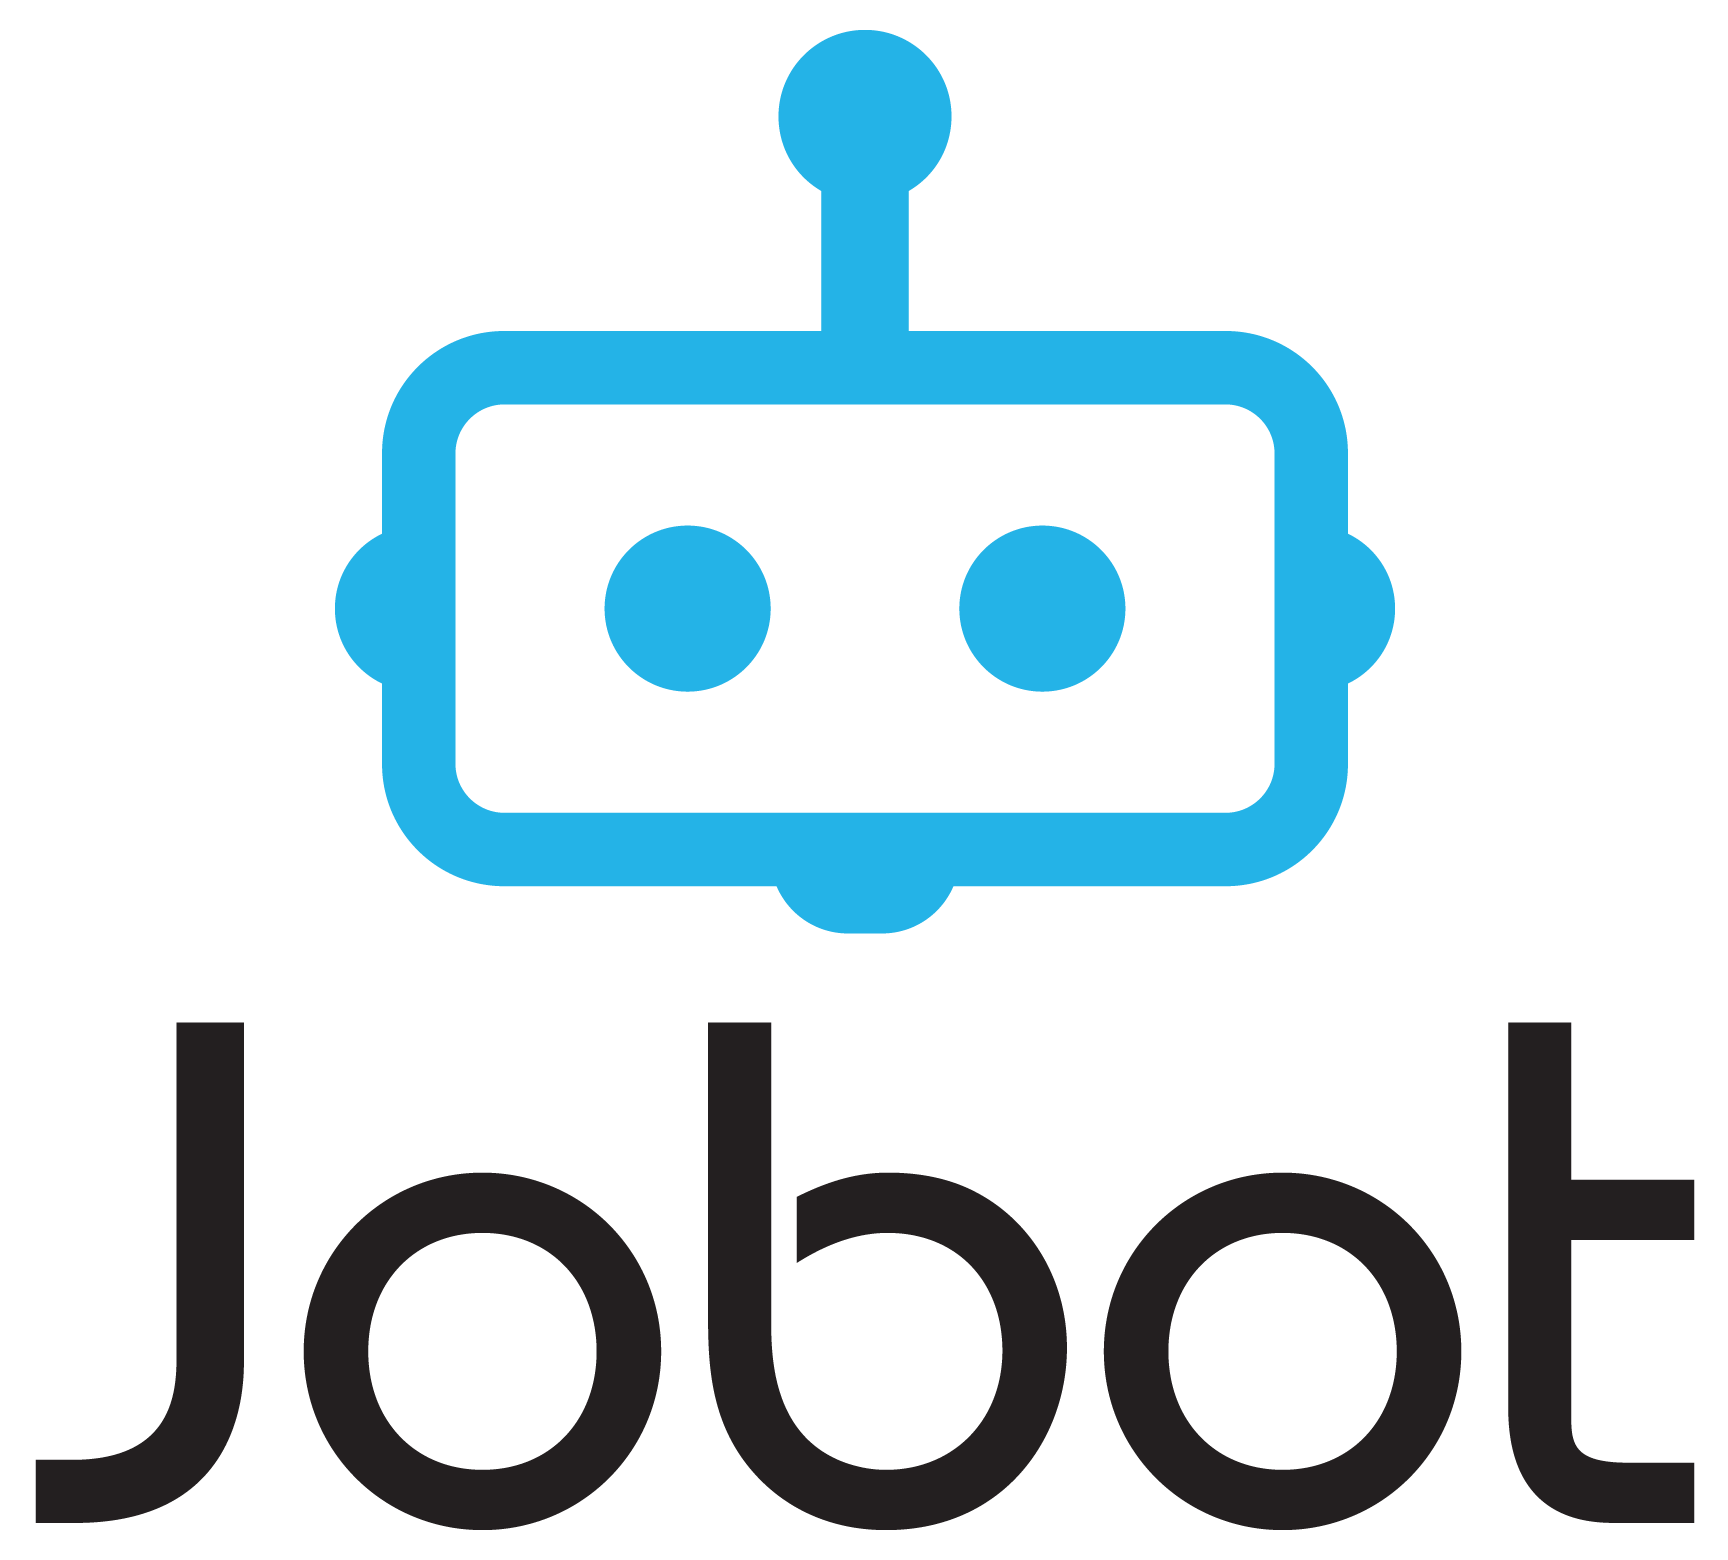 Jobot Company Logo